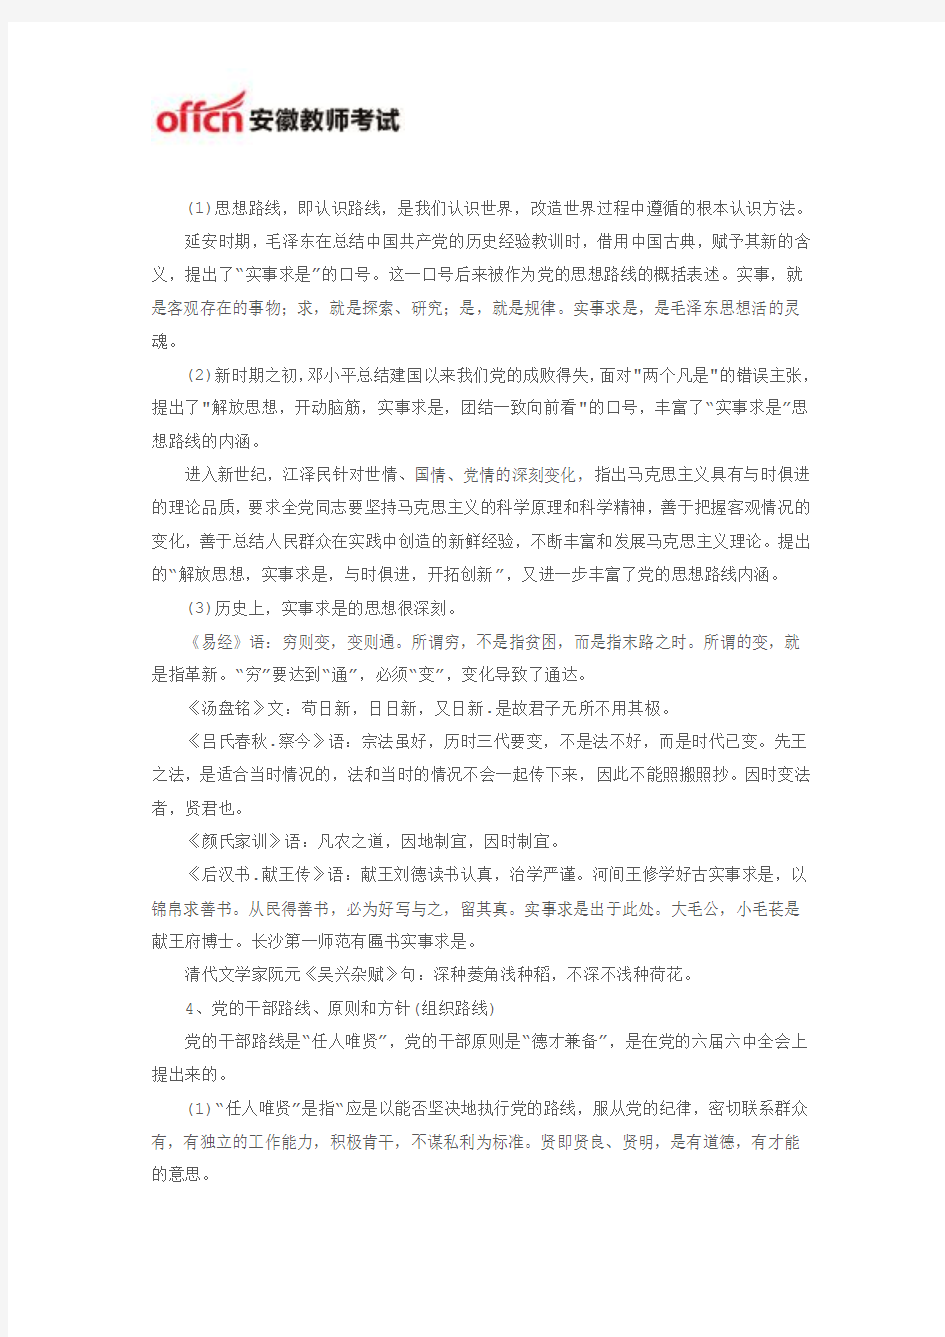 2015安徽六安教师招考公告